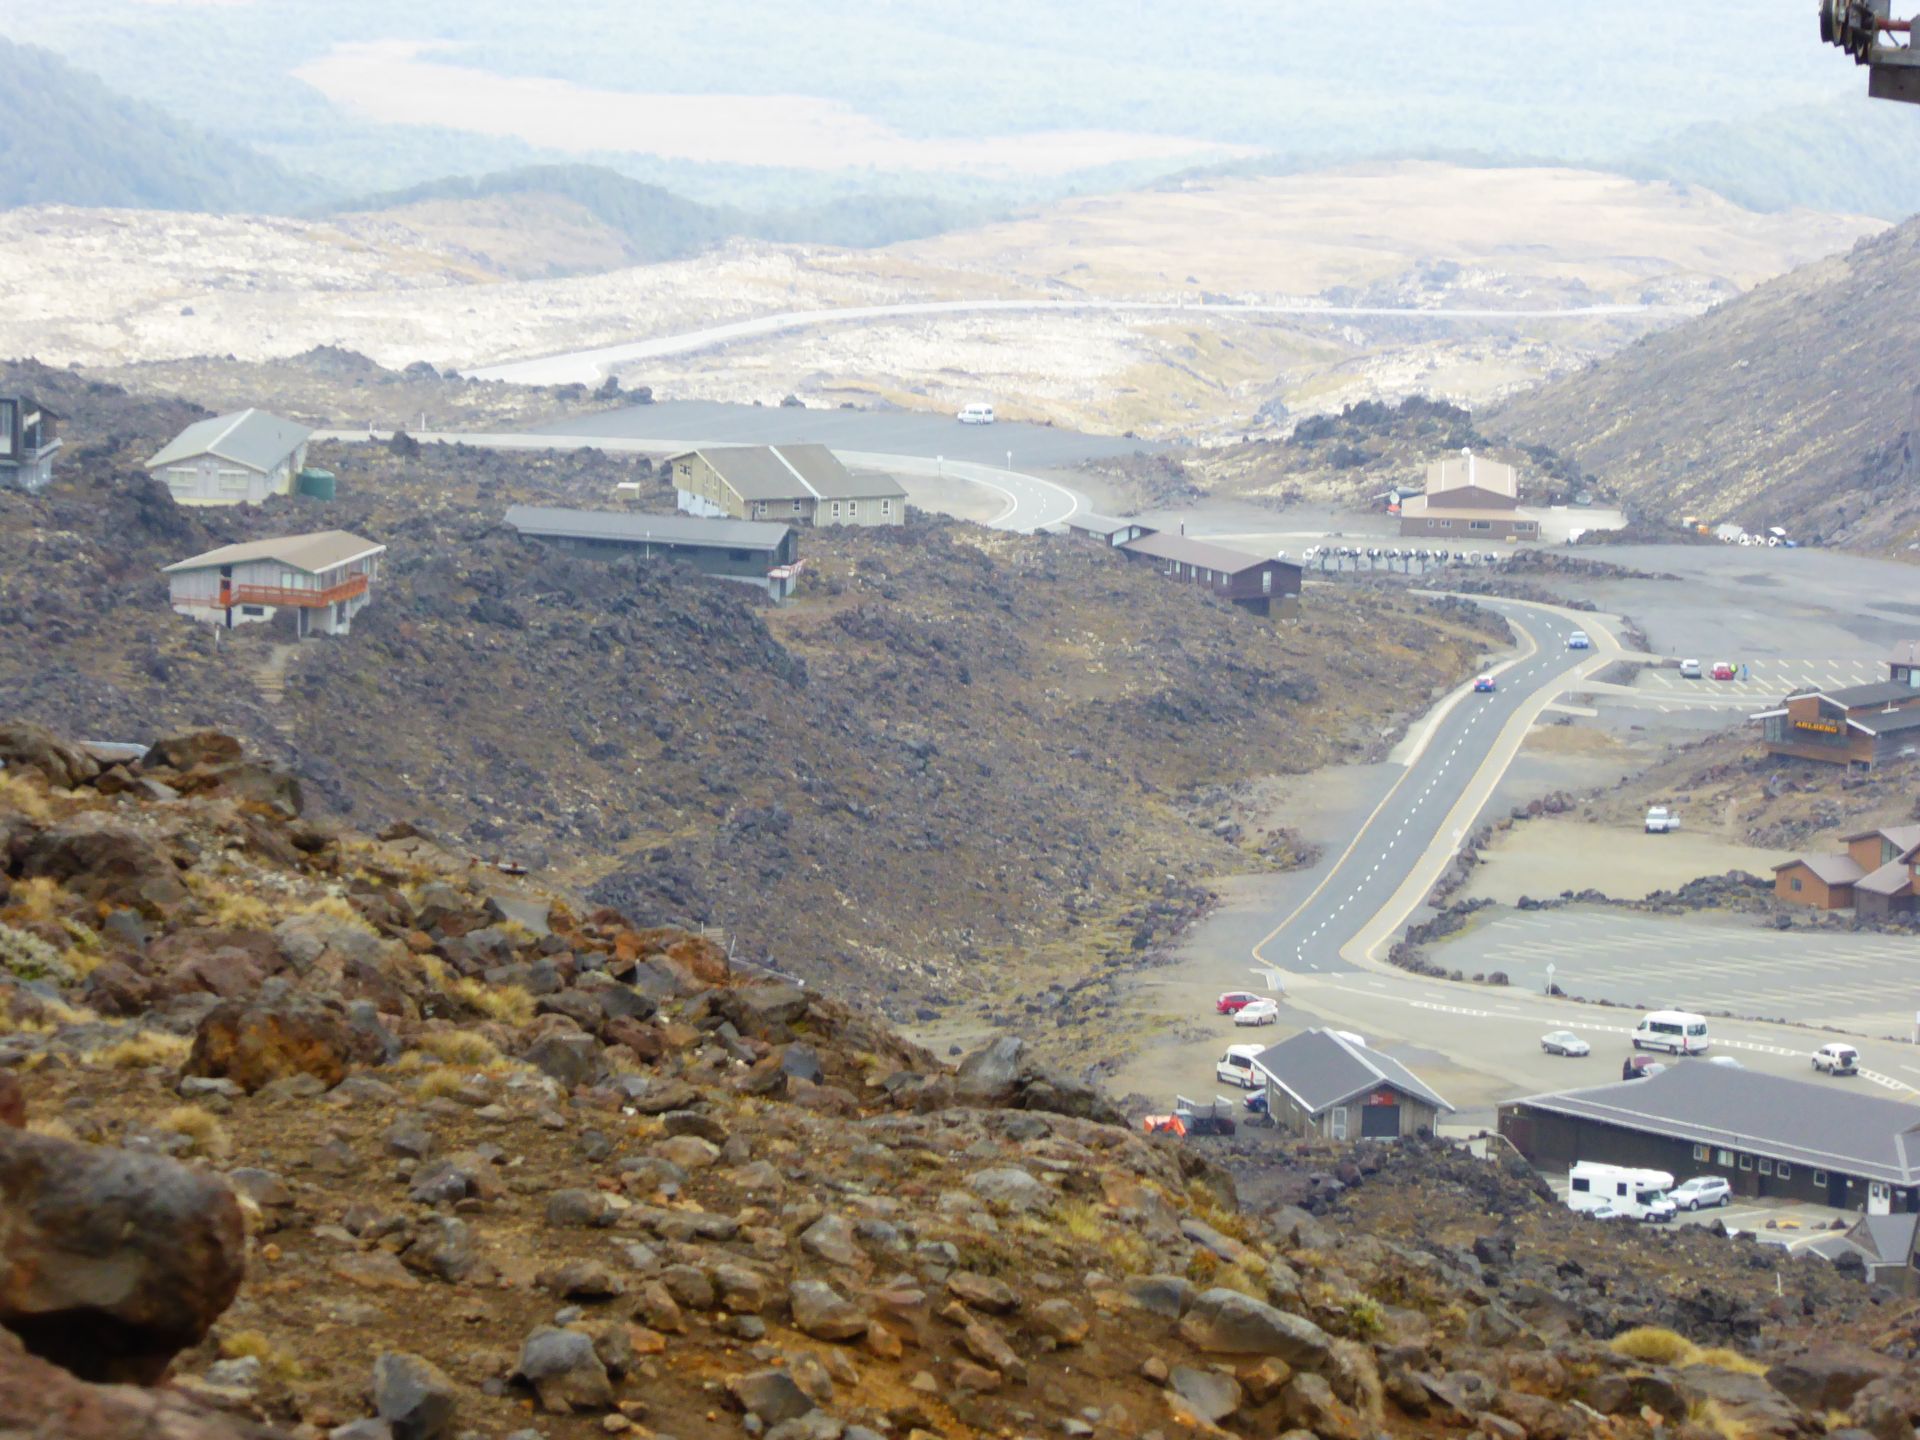 View from Ruapehu